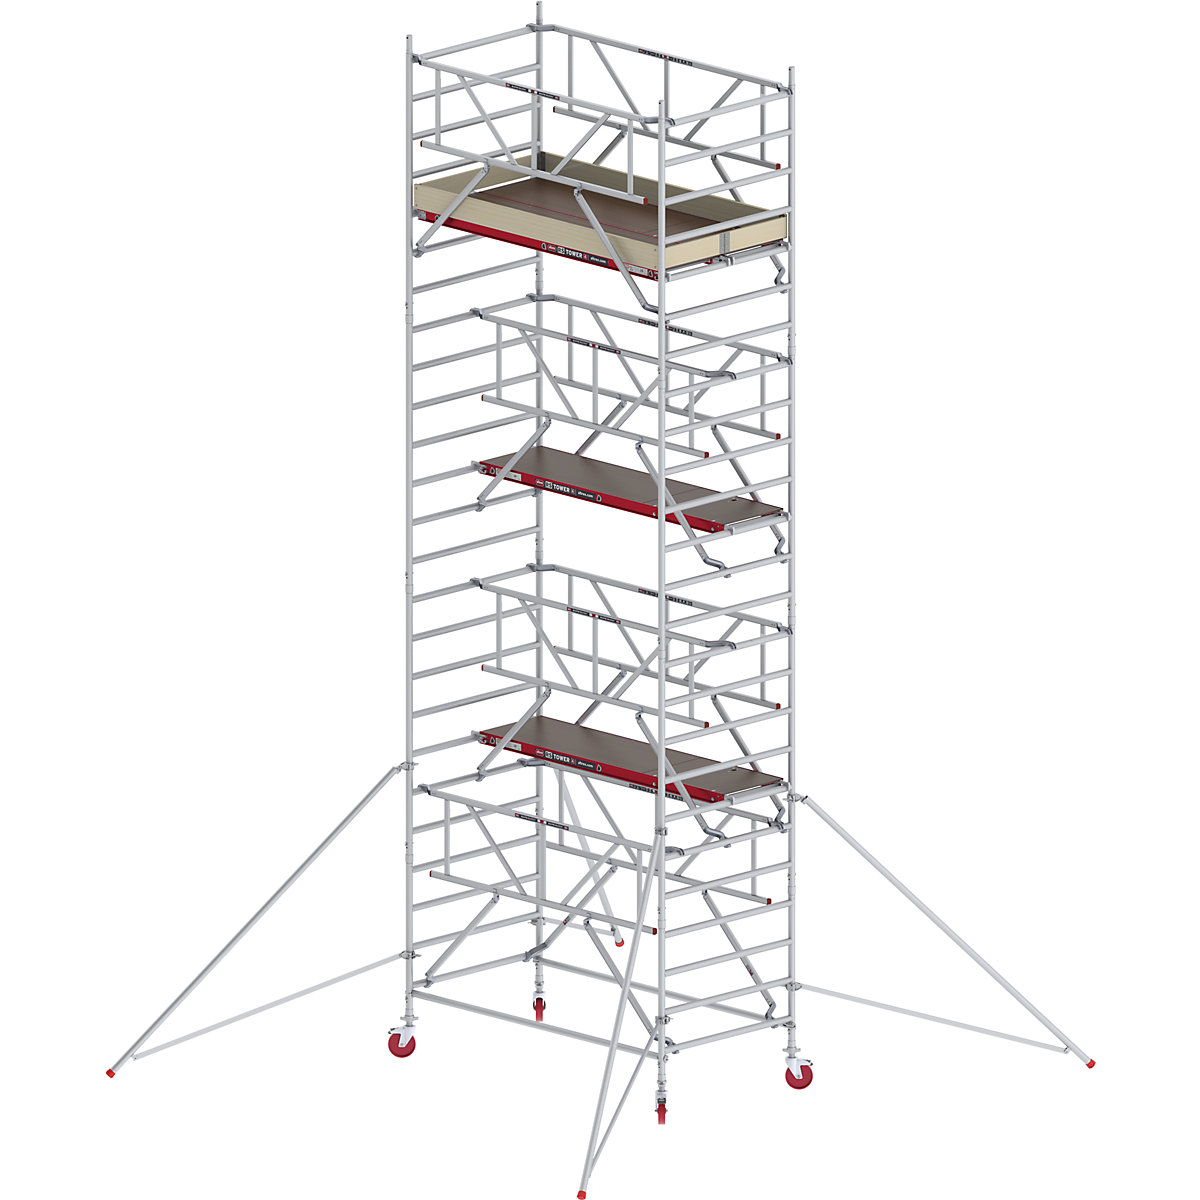 Fahrgerüst RS TOWER 42 breit mit Safe-Quick® Altrex, Holzplattform, Länge 1,85 m, Arbeitshöhe 8,20 m